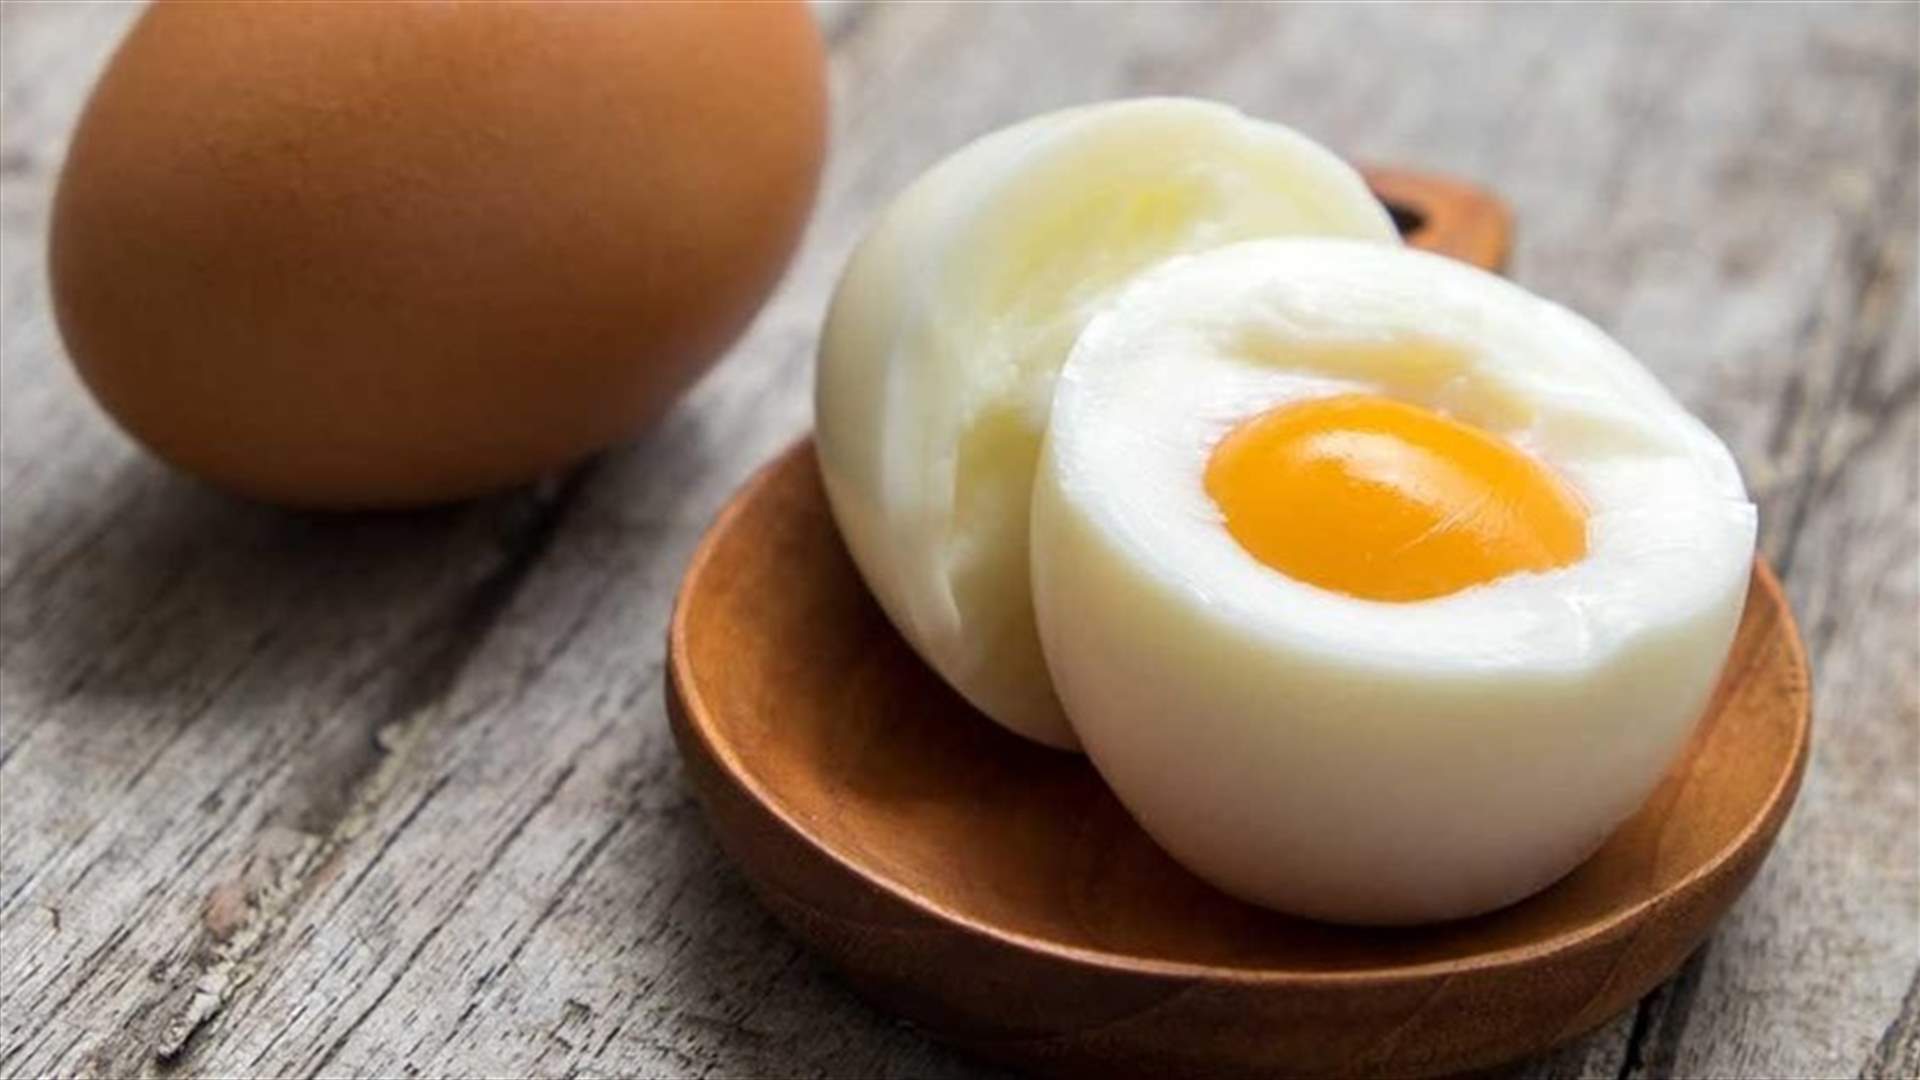 تناولوا بيضتين يومياً... واحصلوا على هذه الفوائد الصحية!